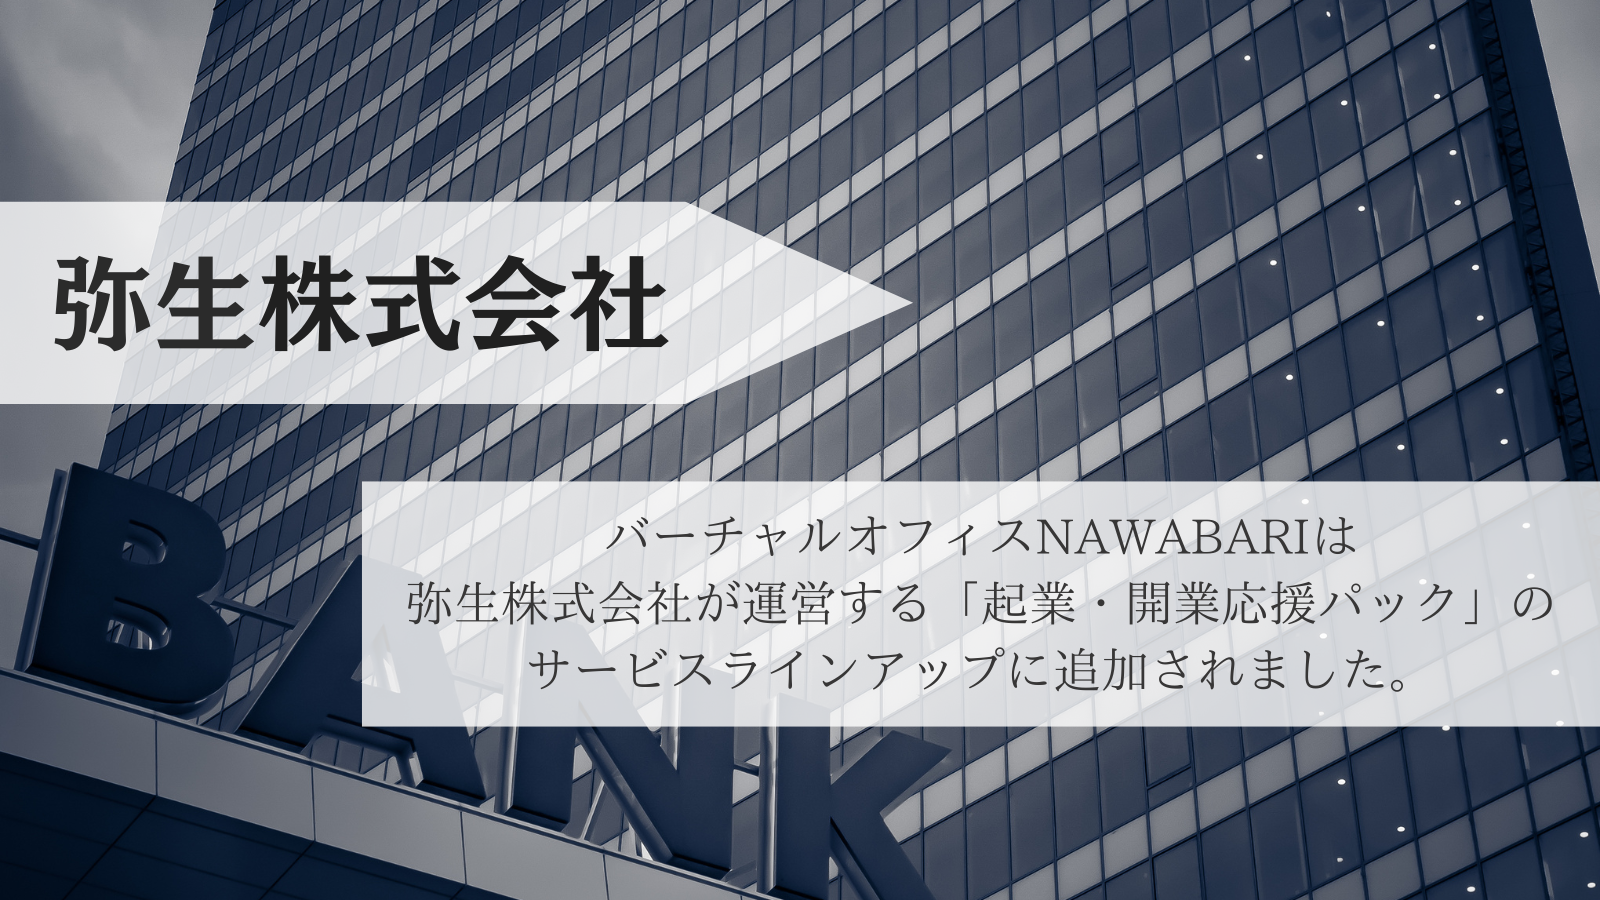 弥生株式会社の運営する「起業・開業応援パック」のサービスラインアップにNAWABARIが追加されました。|バーチャルオフィスNAWABARI